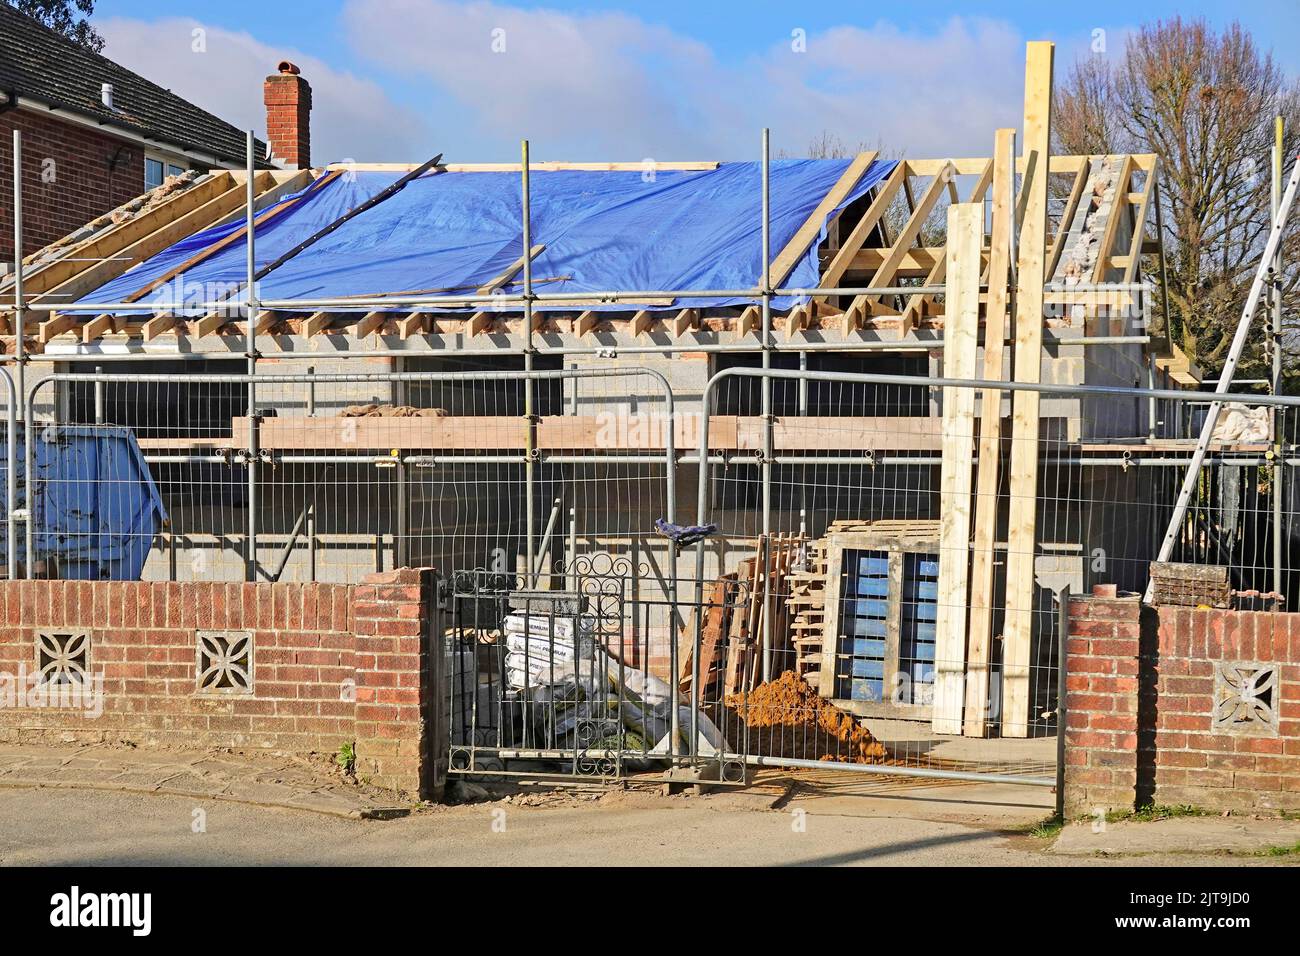 Kompakte Füllung Gehäuse Bungalow Gebäude Baustelle beibehalten vorderen Backstein Grenzwand arbeiten auf Dachhölzern & Gerüst England Großbritannien Stockfoto